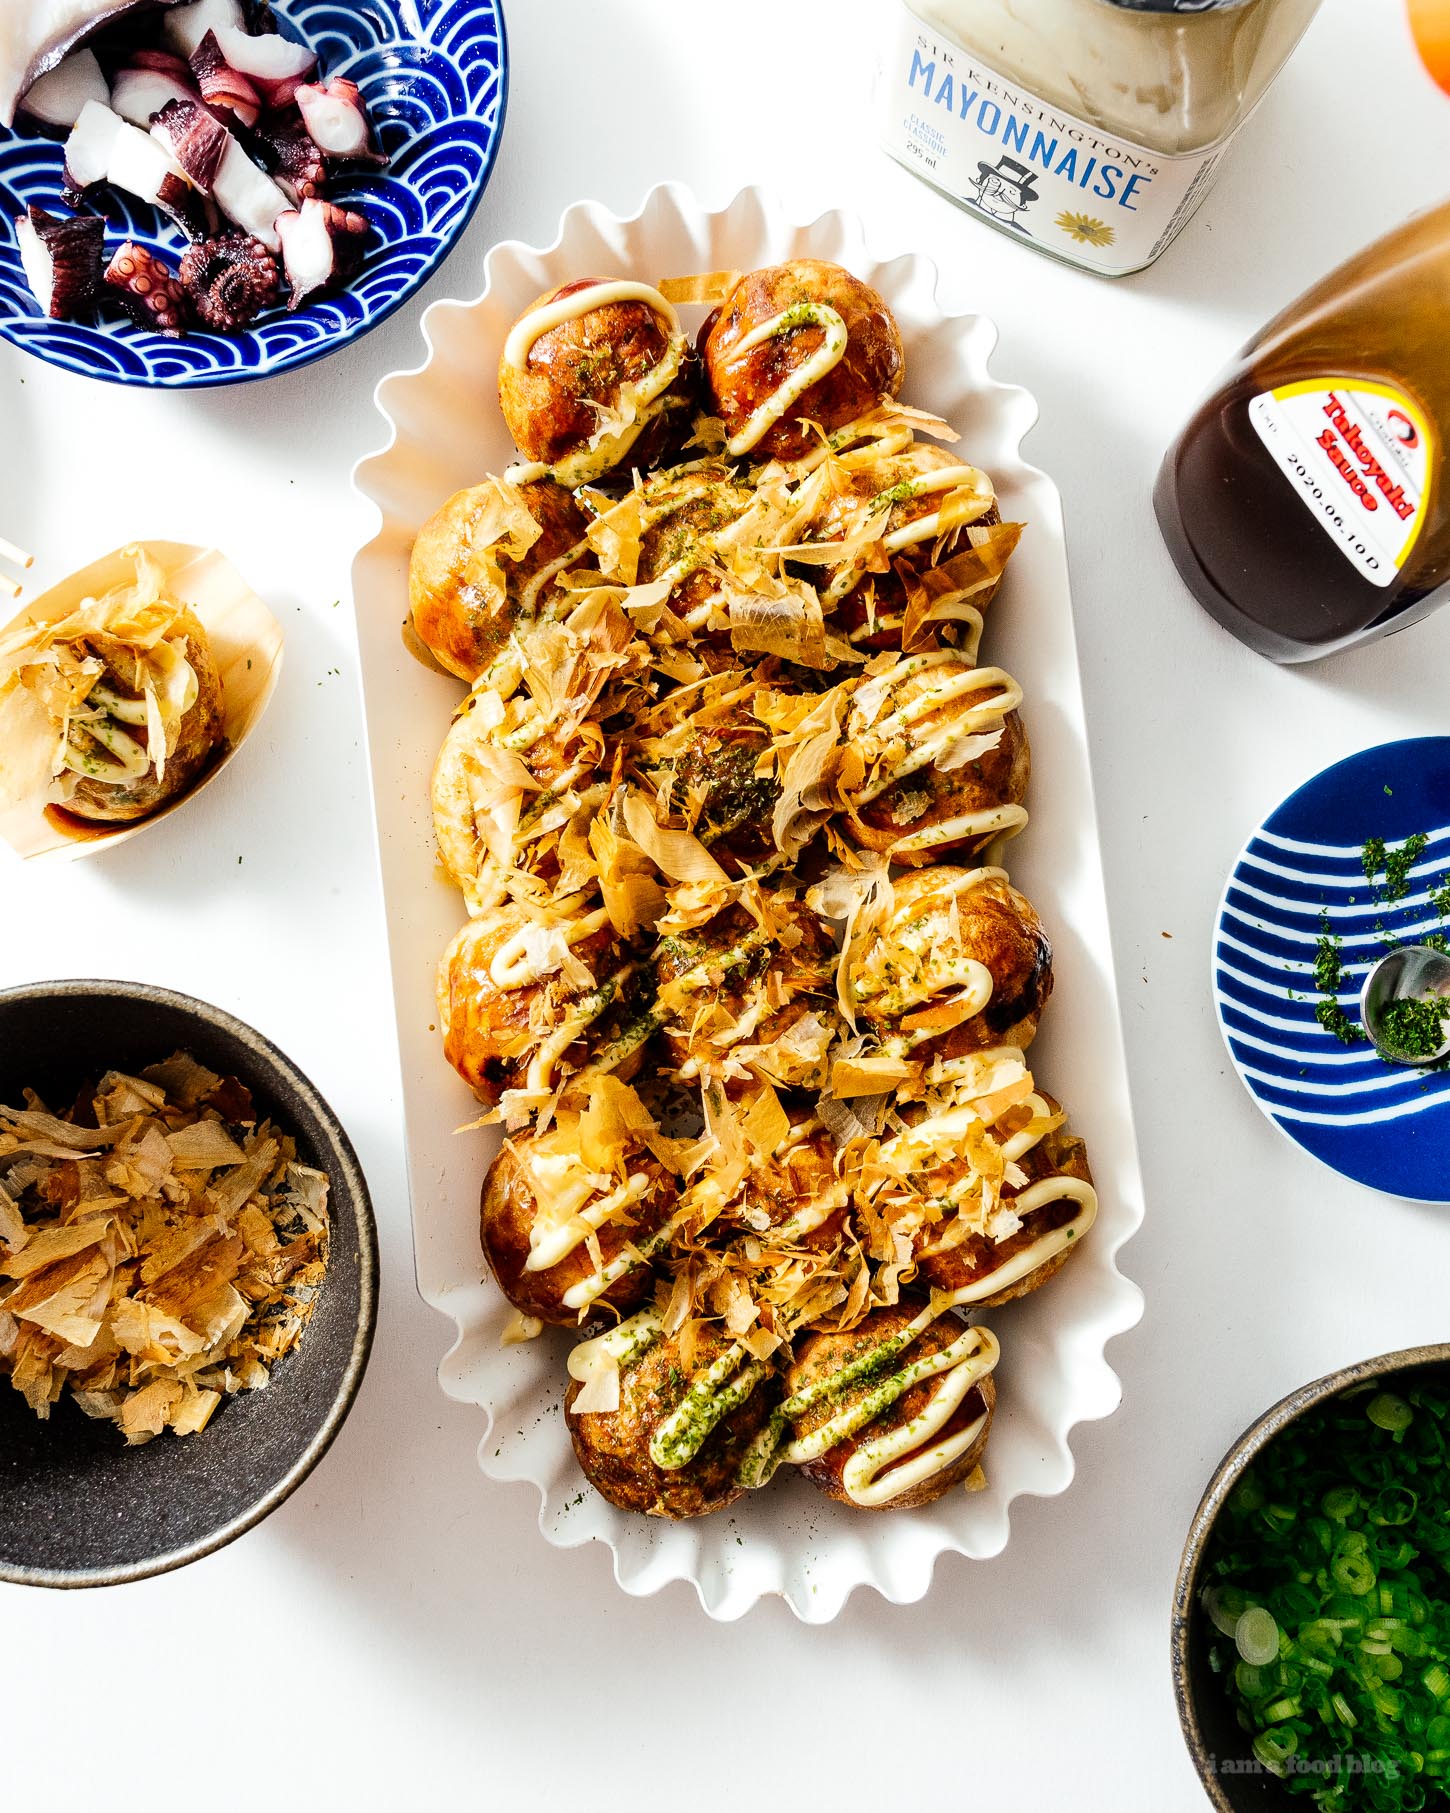 Pase una cena de takoyaki japonés con este takoyaki, la mejor comida callejera japonesa en la mesa con amigos y familiares.  ¡Interactivo, divertido y sabroso!  Receta auténtica de takoyaki #japanesefood #recipes #takoyaki #streetfood #japan #tokyo #howto